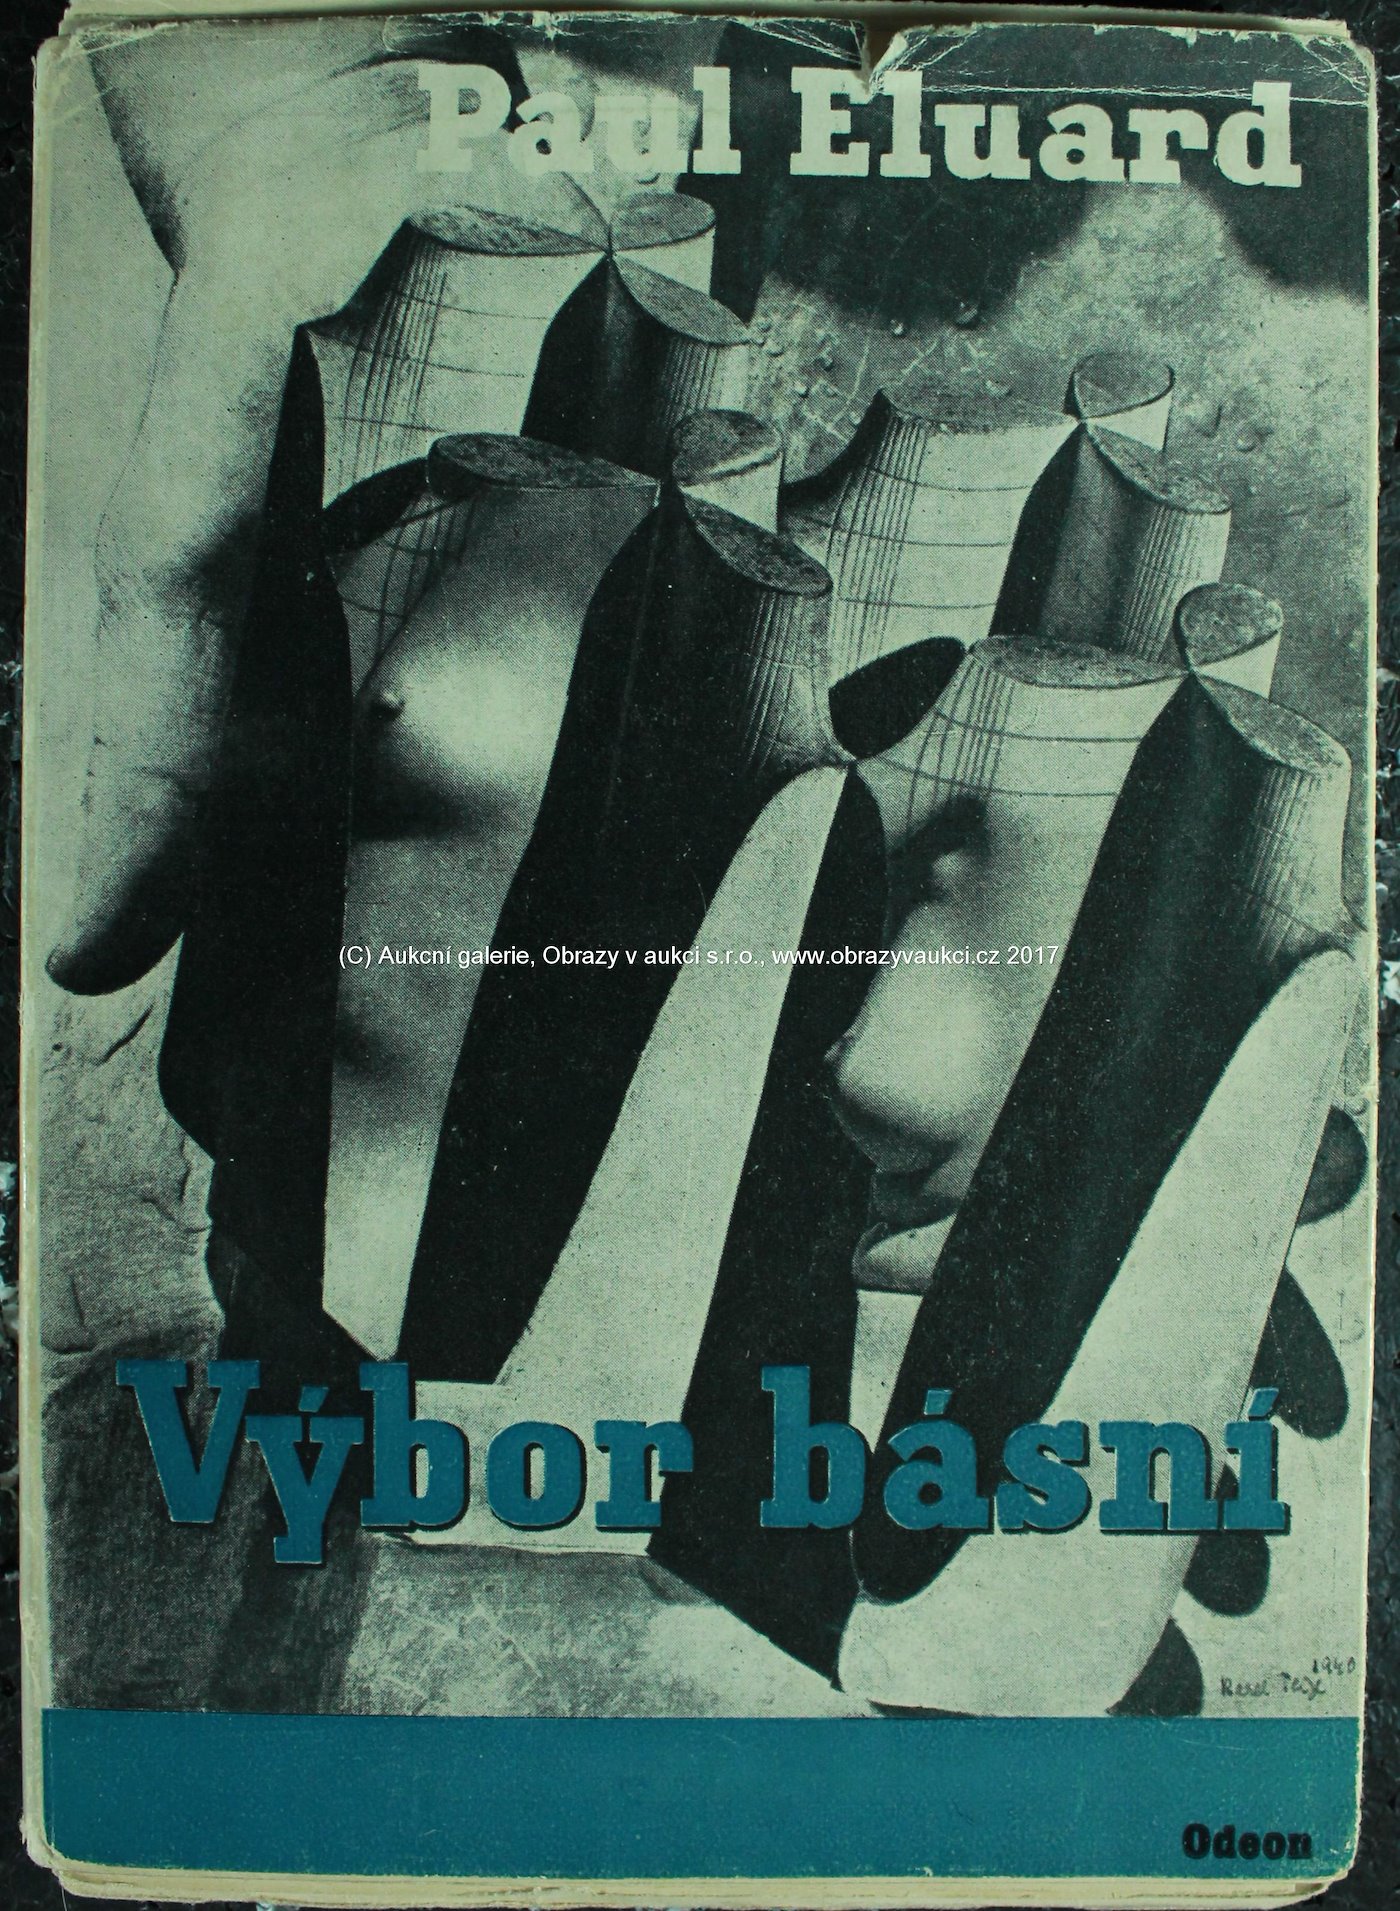 Max Ernst, Jindřich Štyrský, Pablo Picasso, Man Ray, Karel Teige - Výbor básní